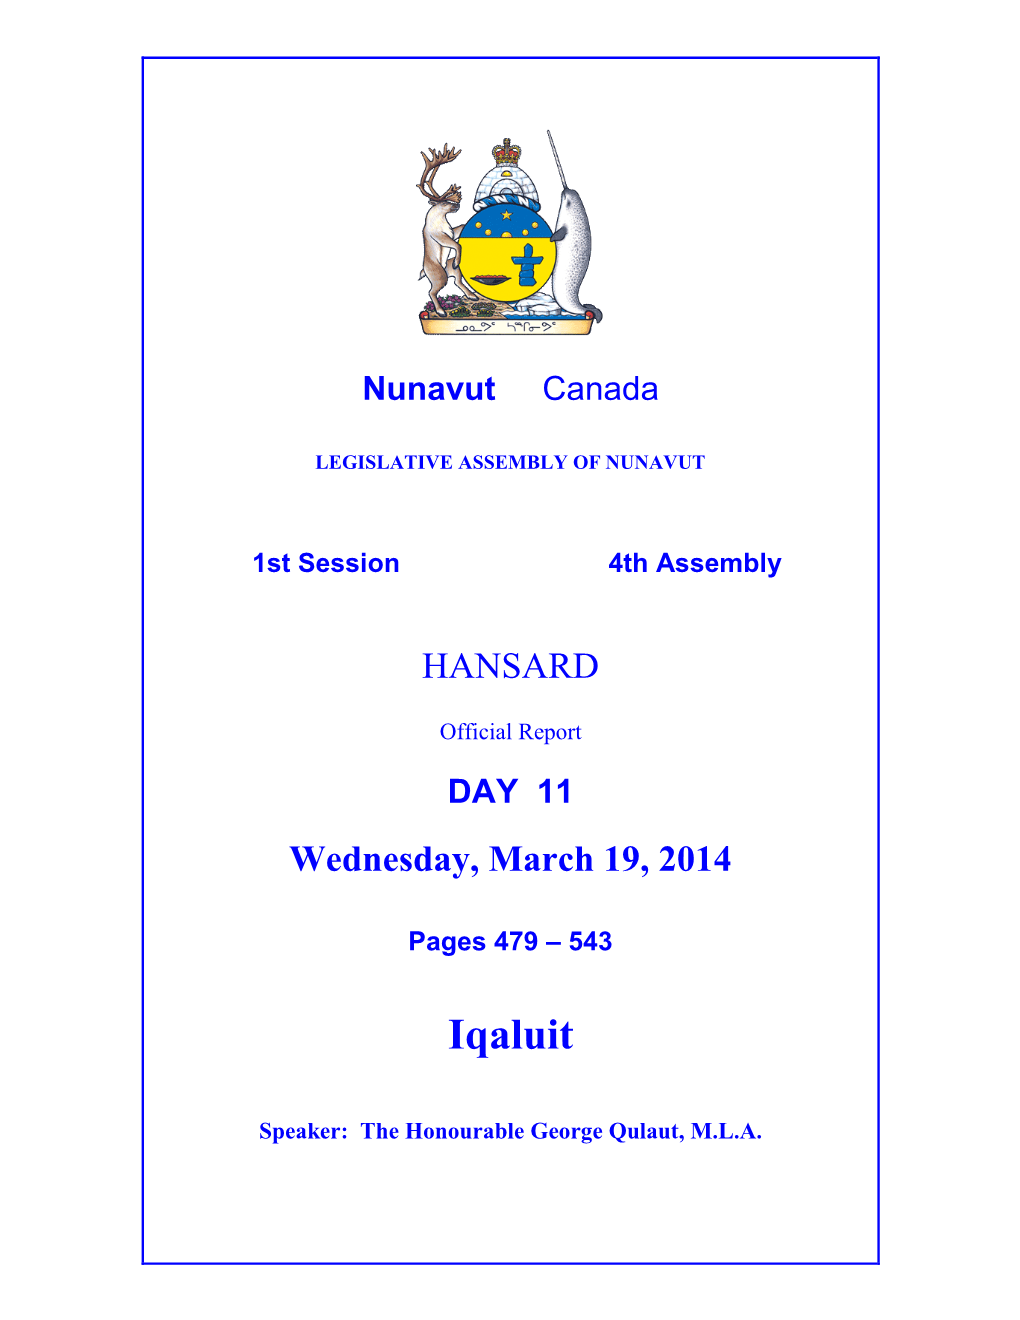 Nunavut Hansard 479